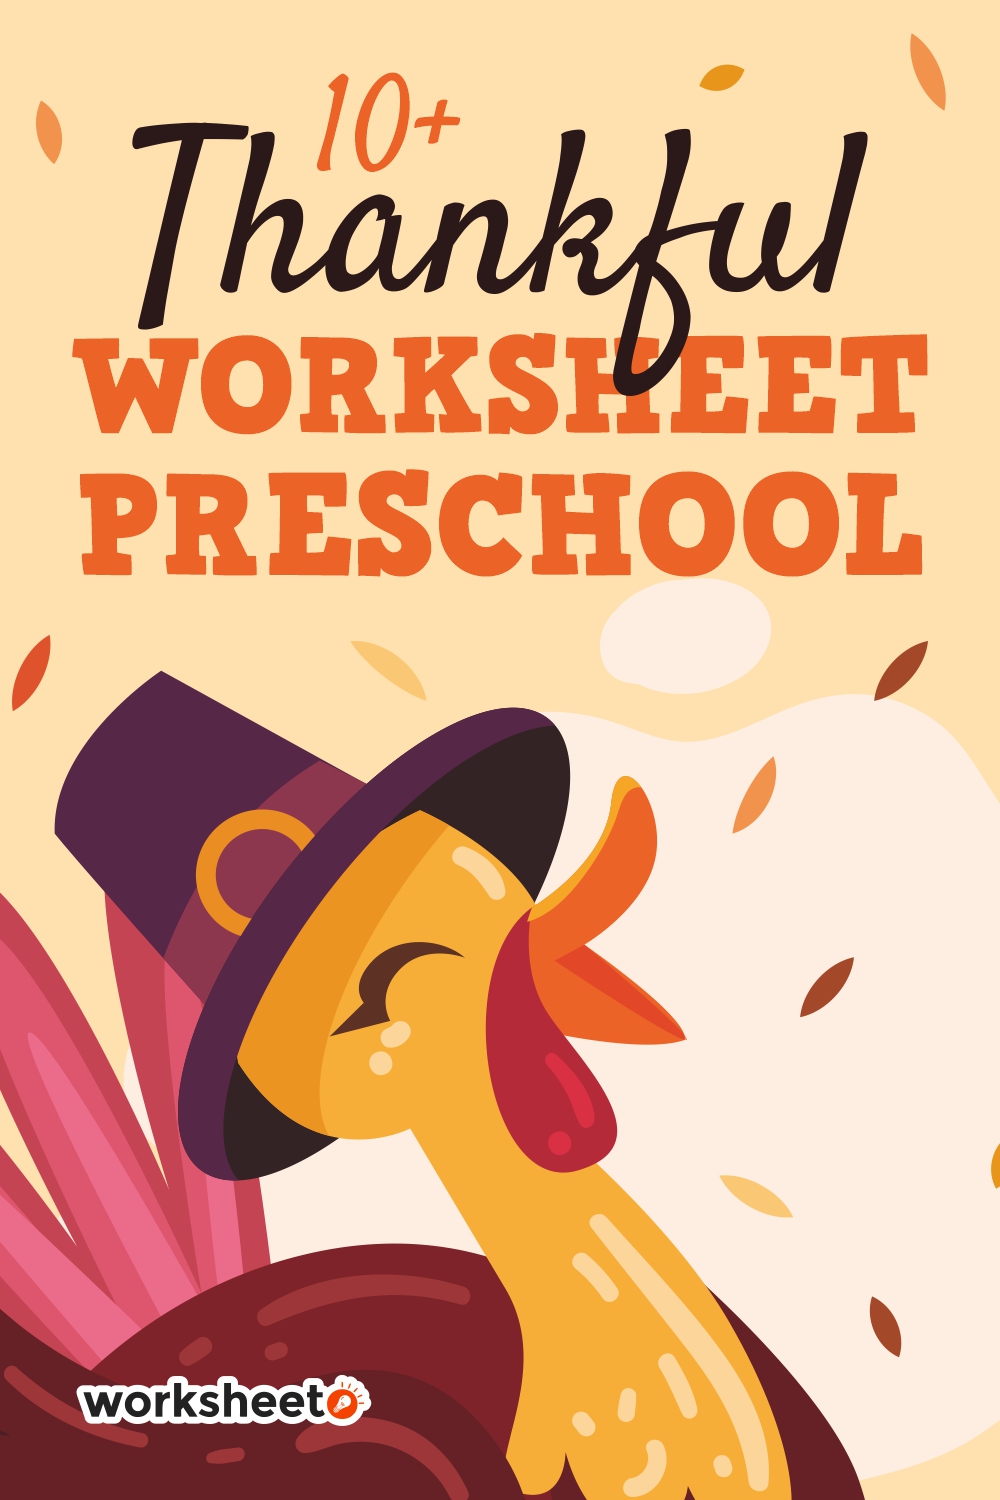 12 Images of Thankful Worksheet Preschool